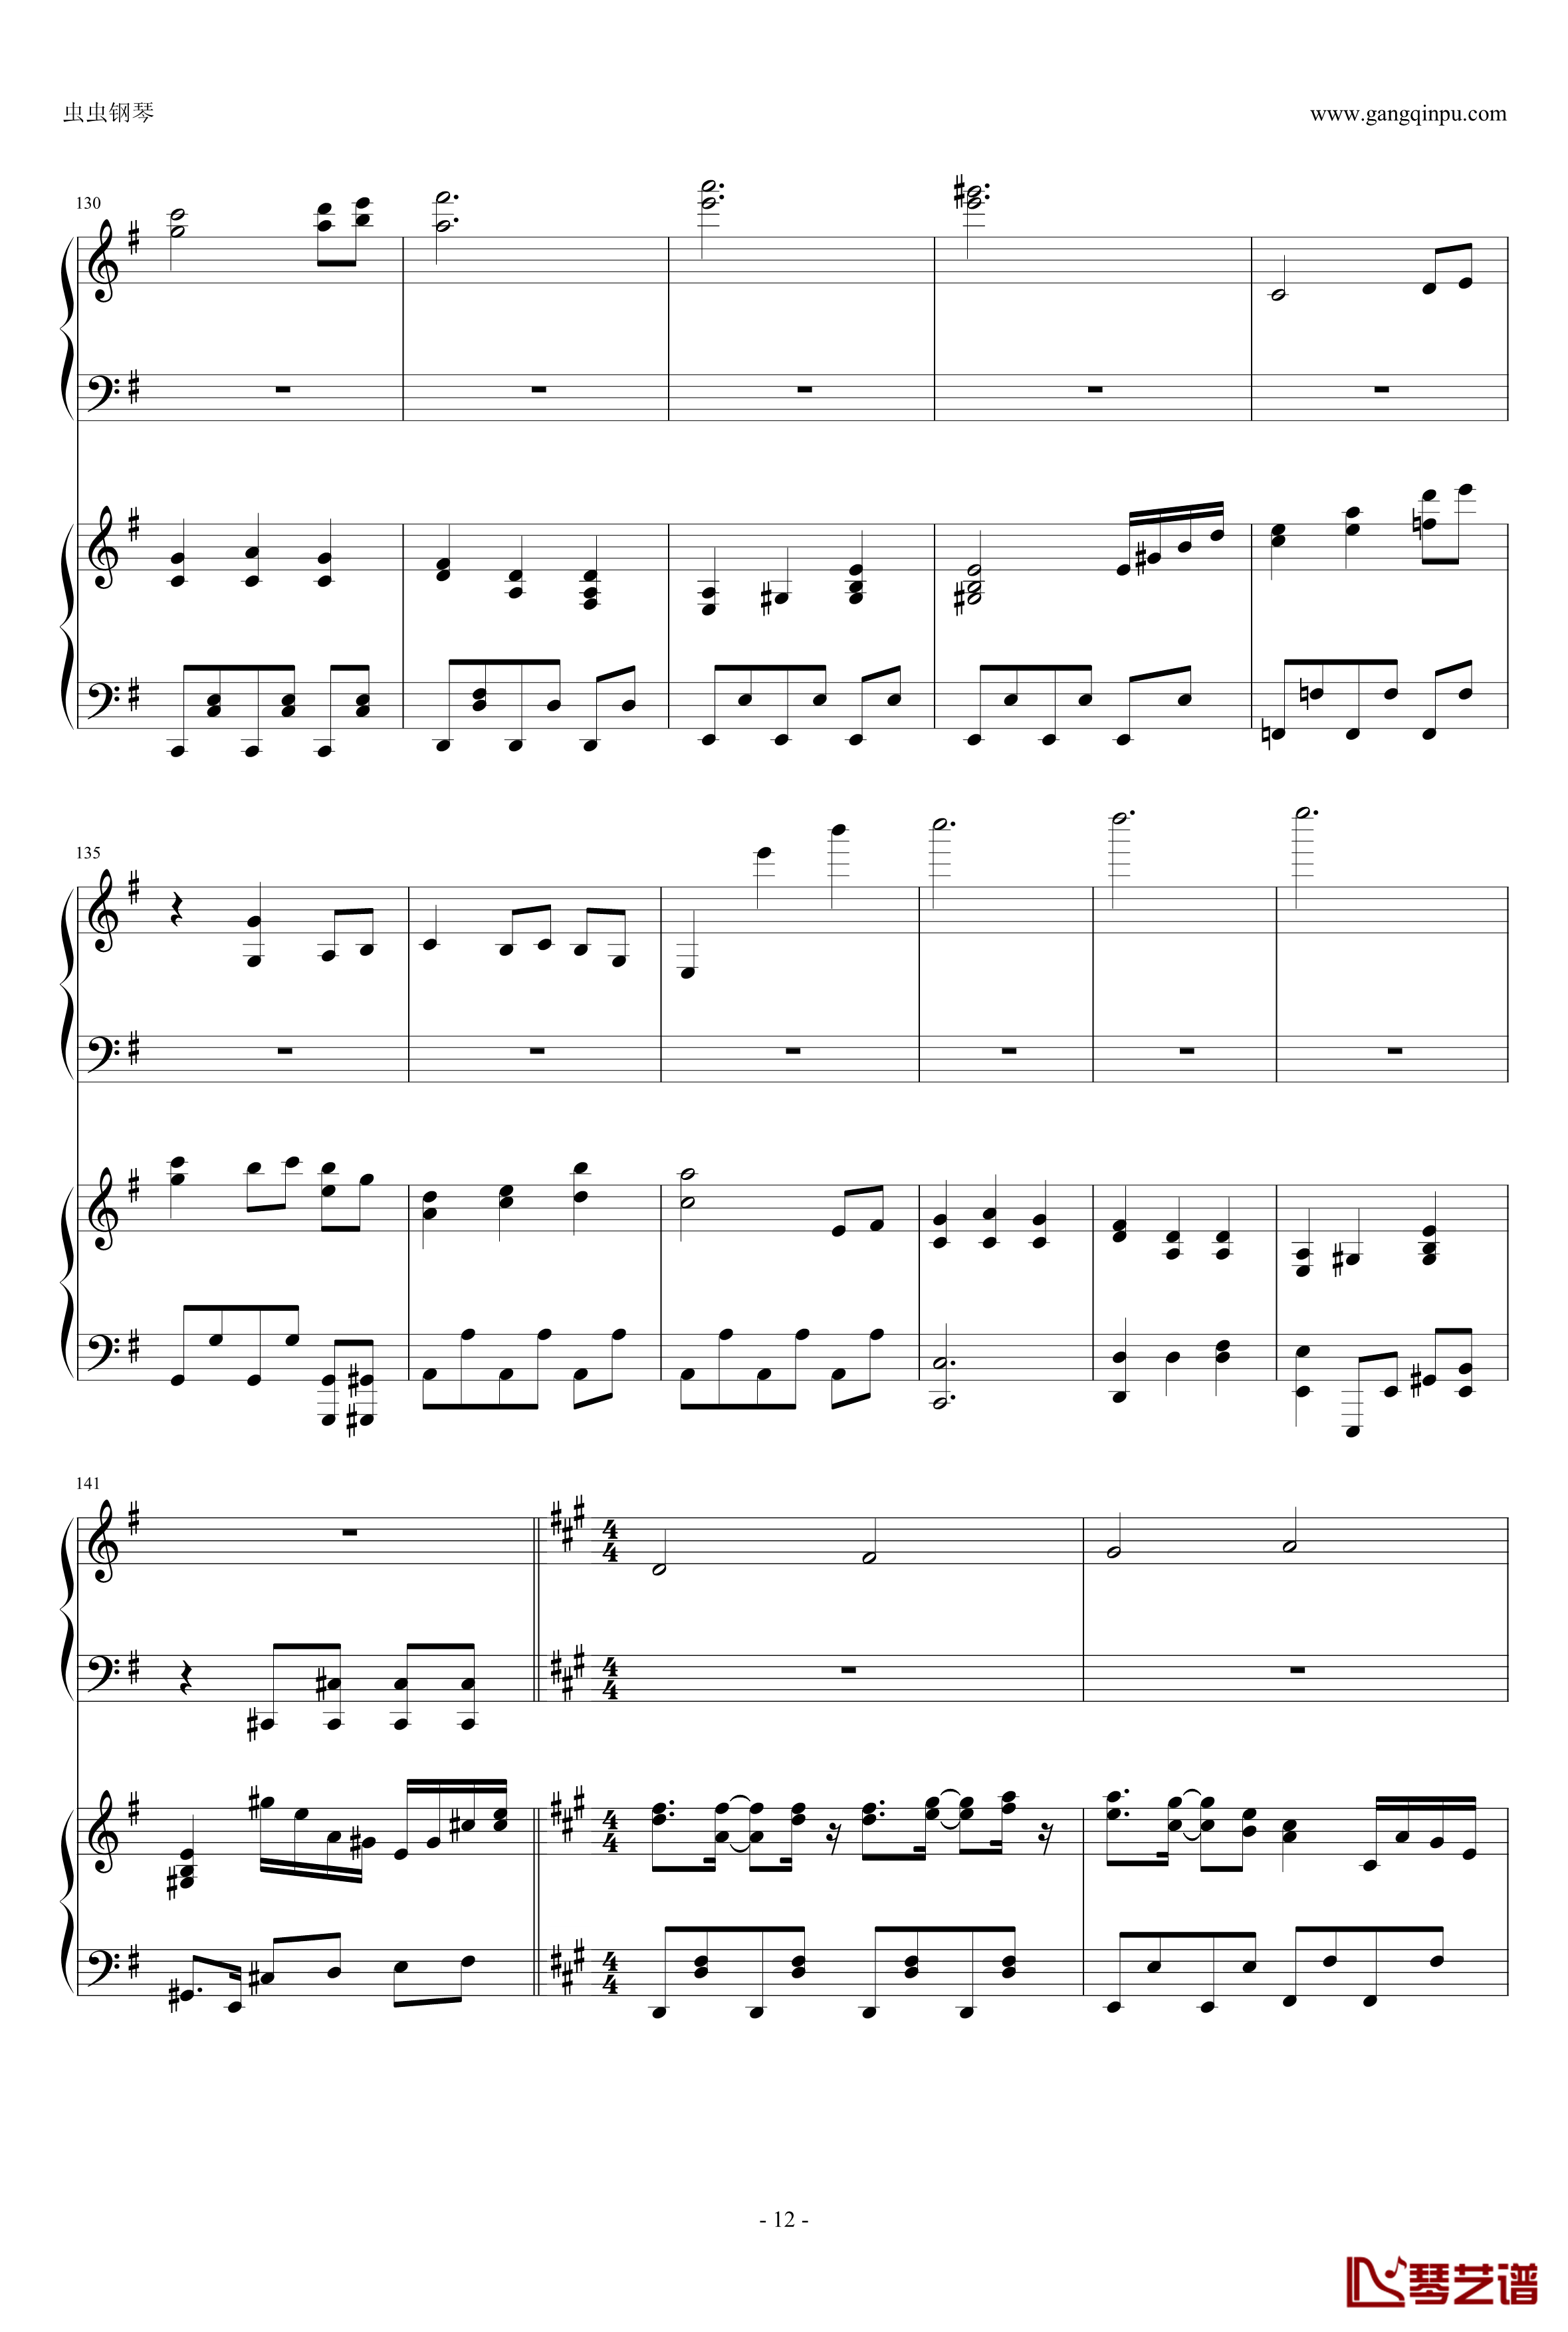 東方連奏曲II Pianoforte钢琴谱-第一部分-东方project12